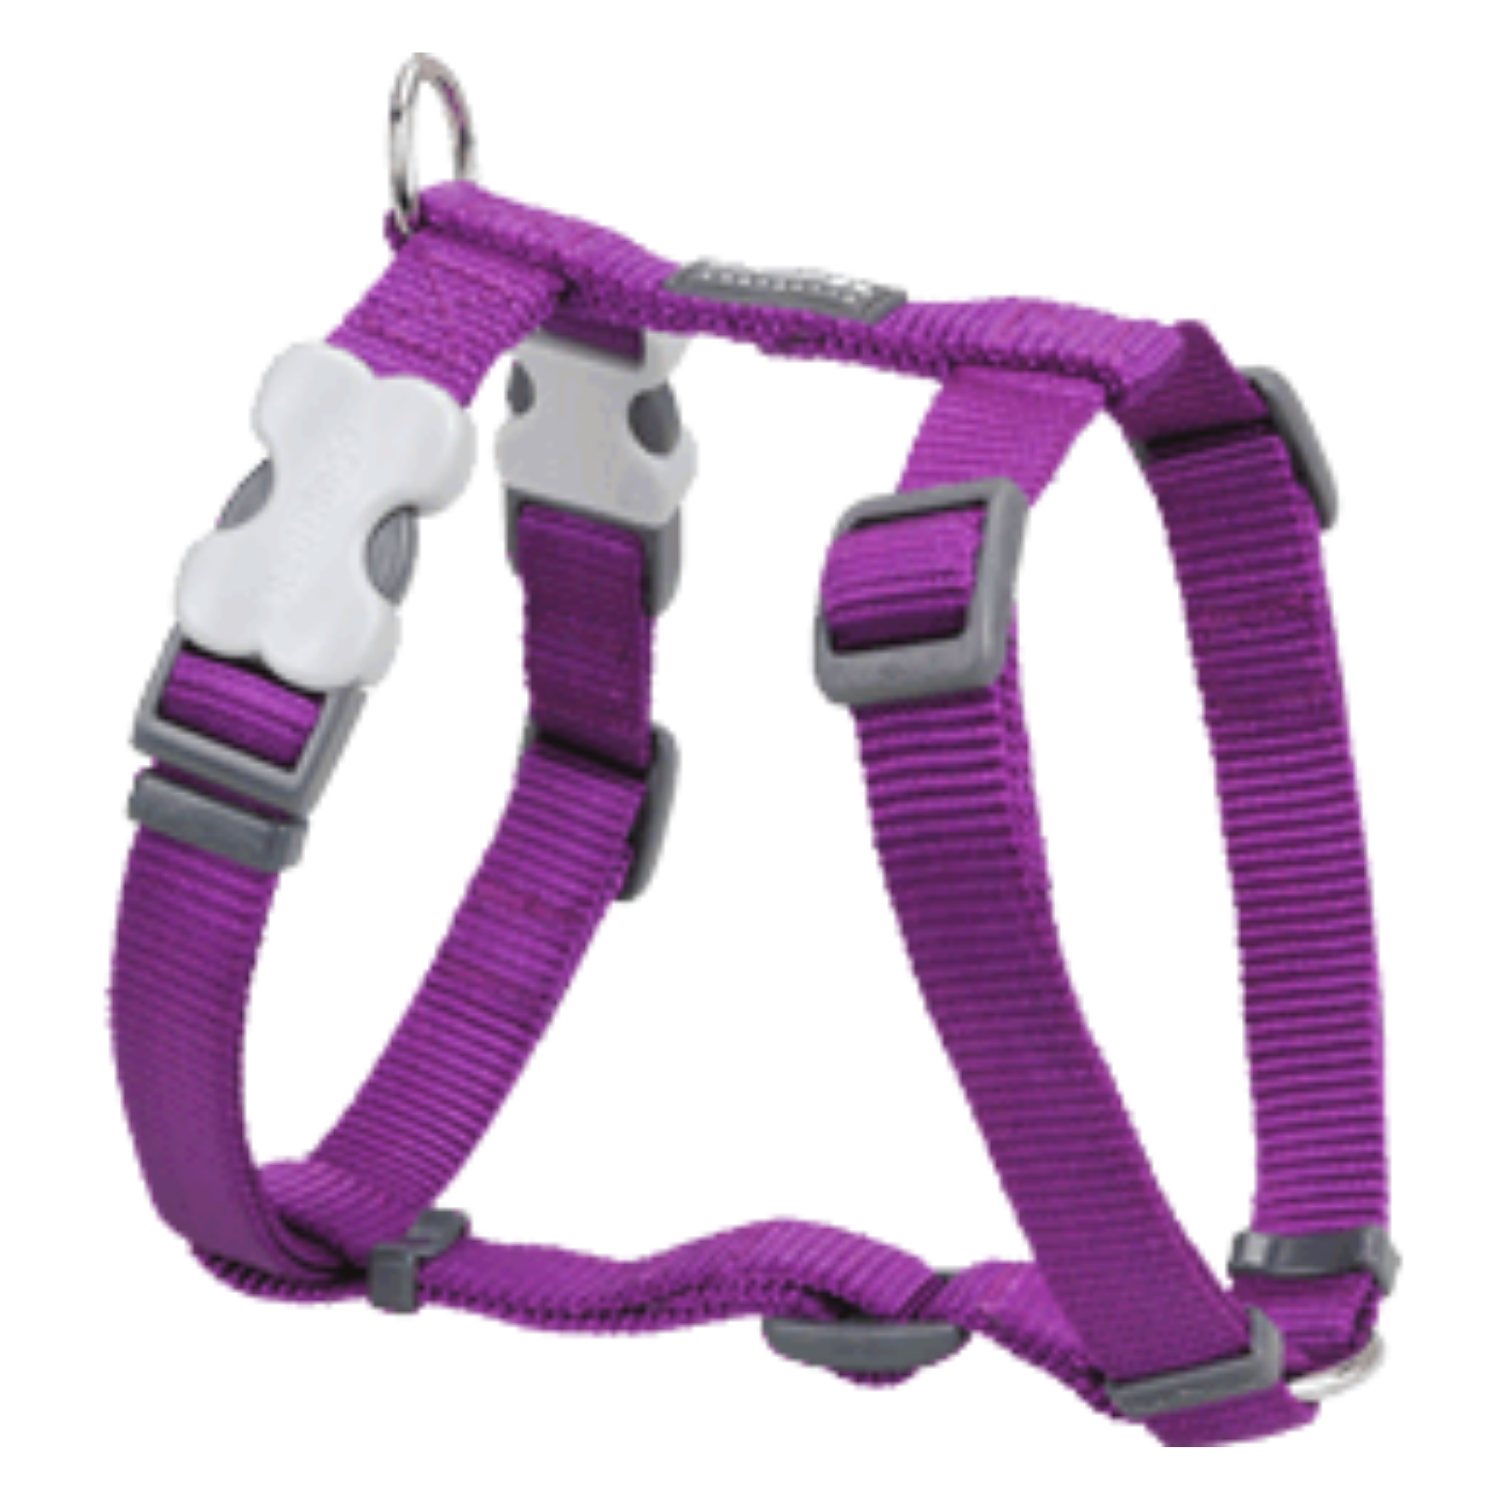 Red Dingo Dog Harness - Classic Range (Purple)